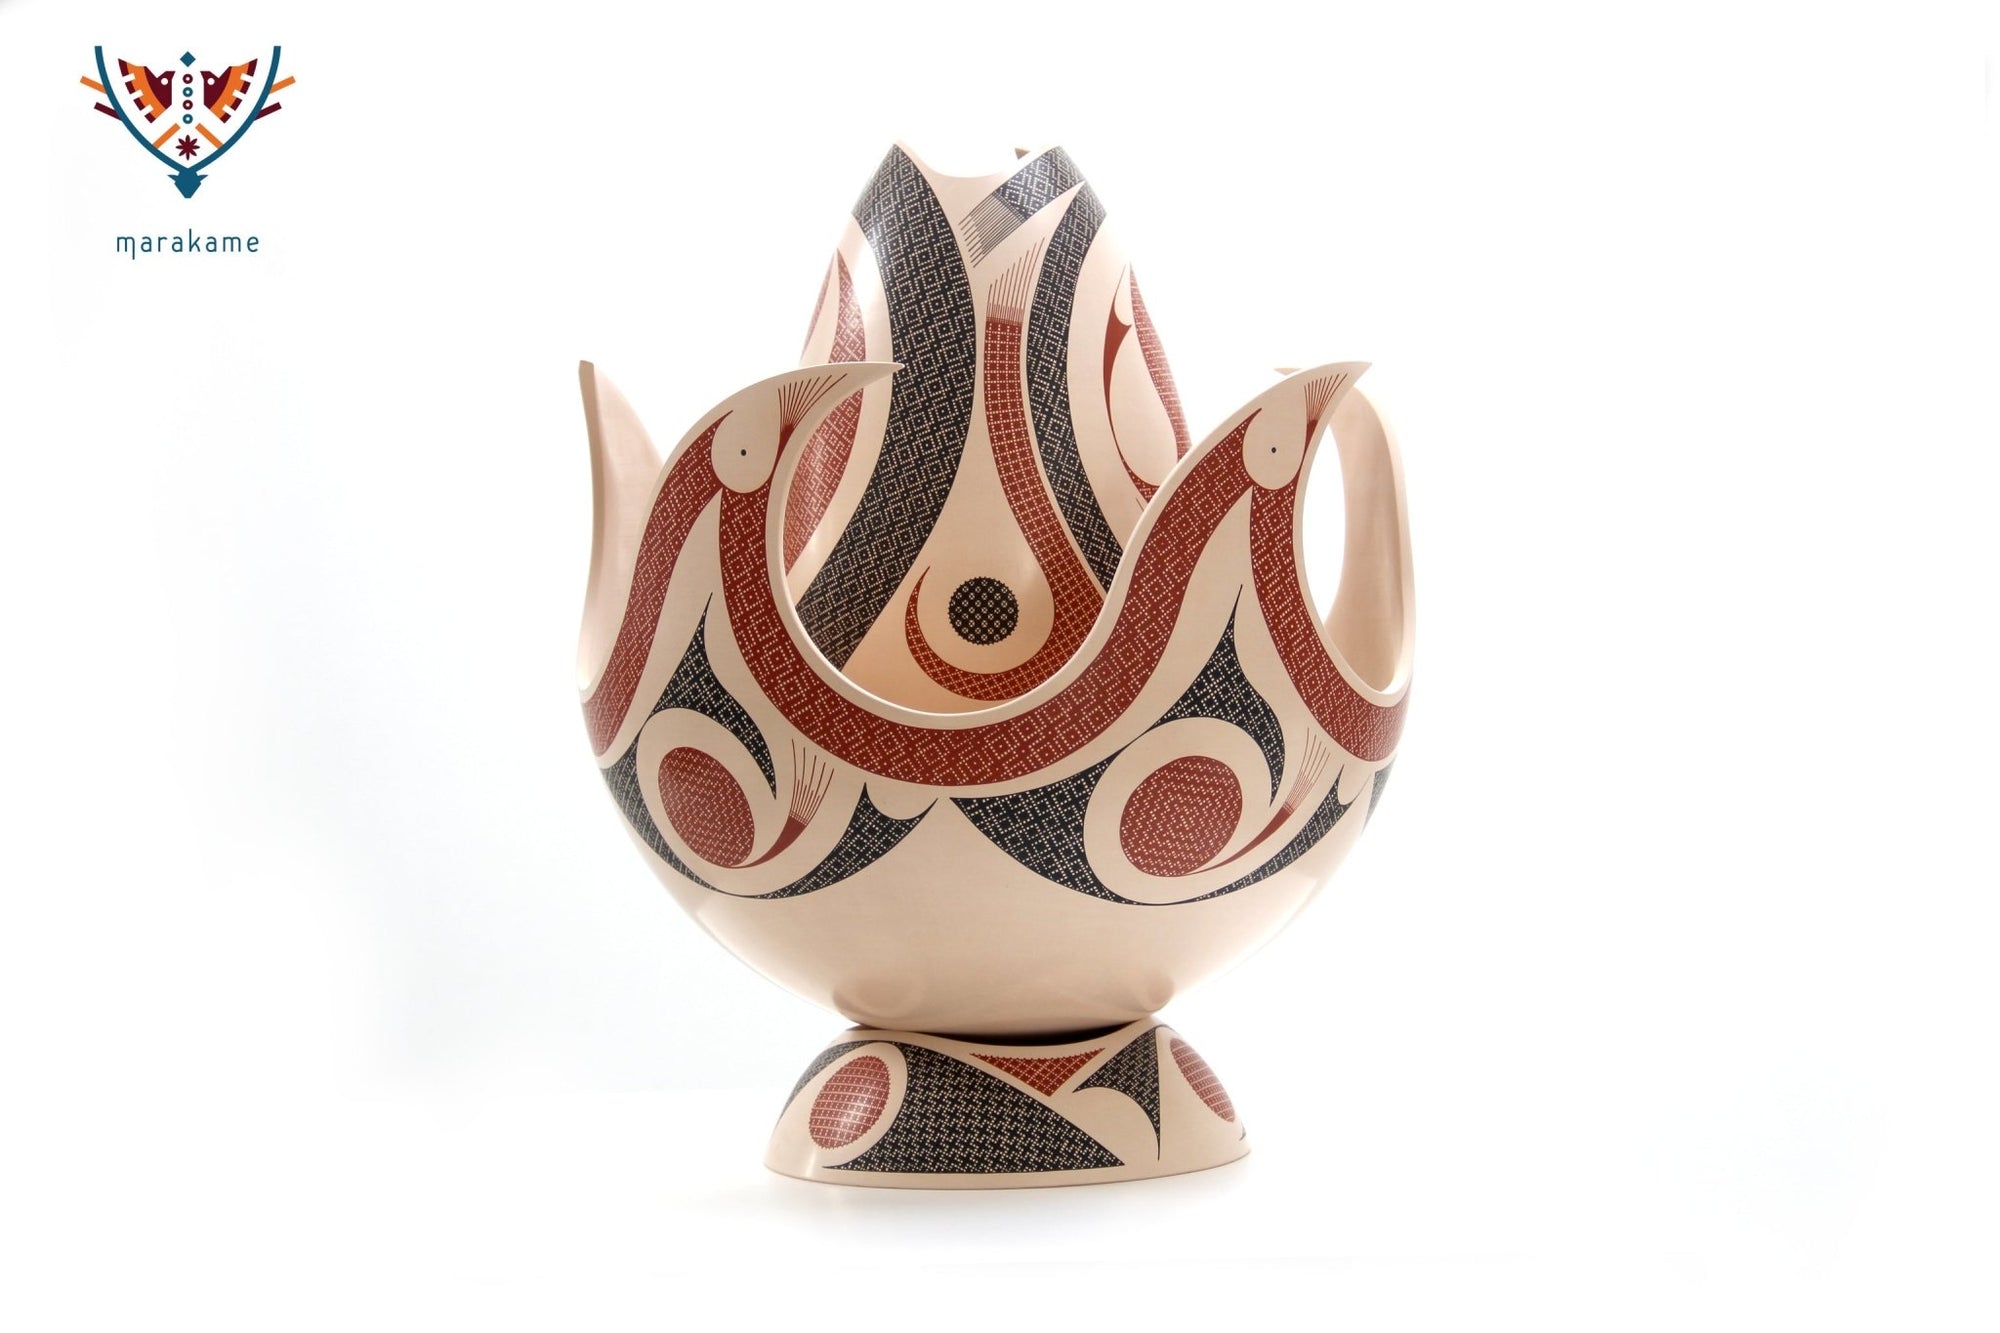 Mata Ortiz Ceramic - Fire - Masterpiece - Huichol Art - Marakame